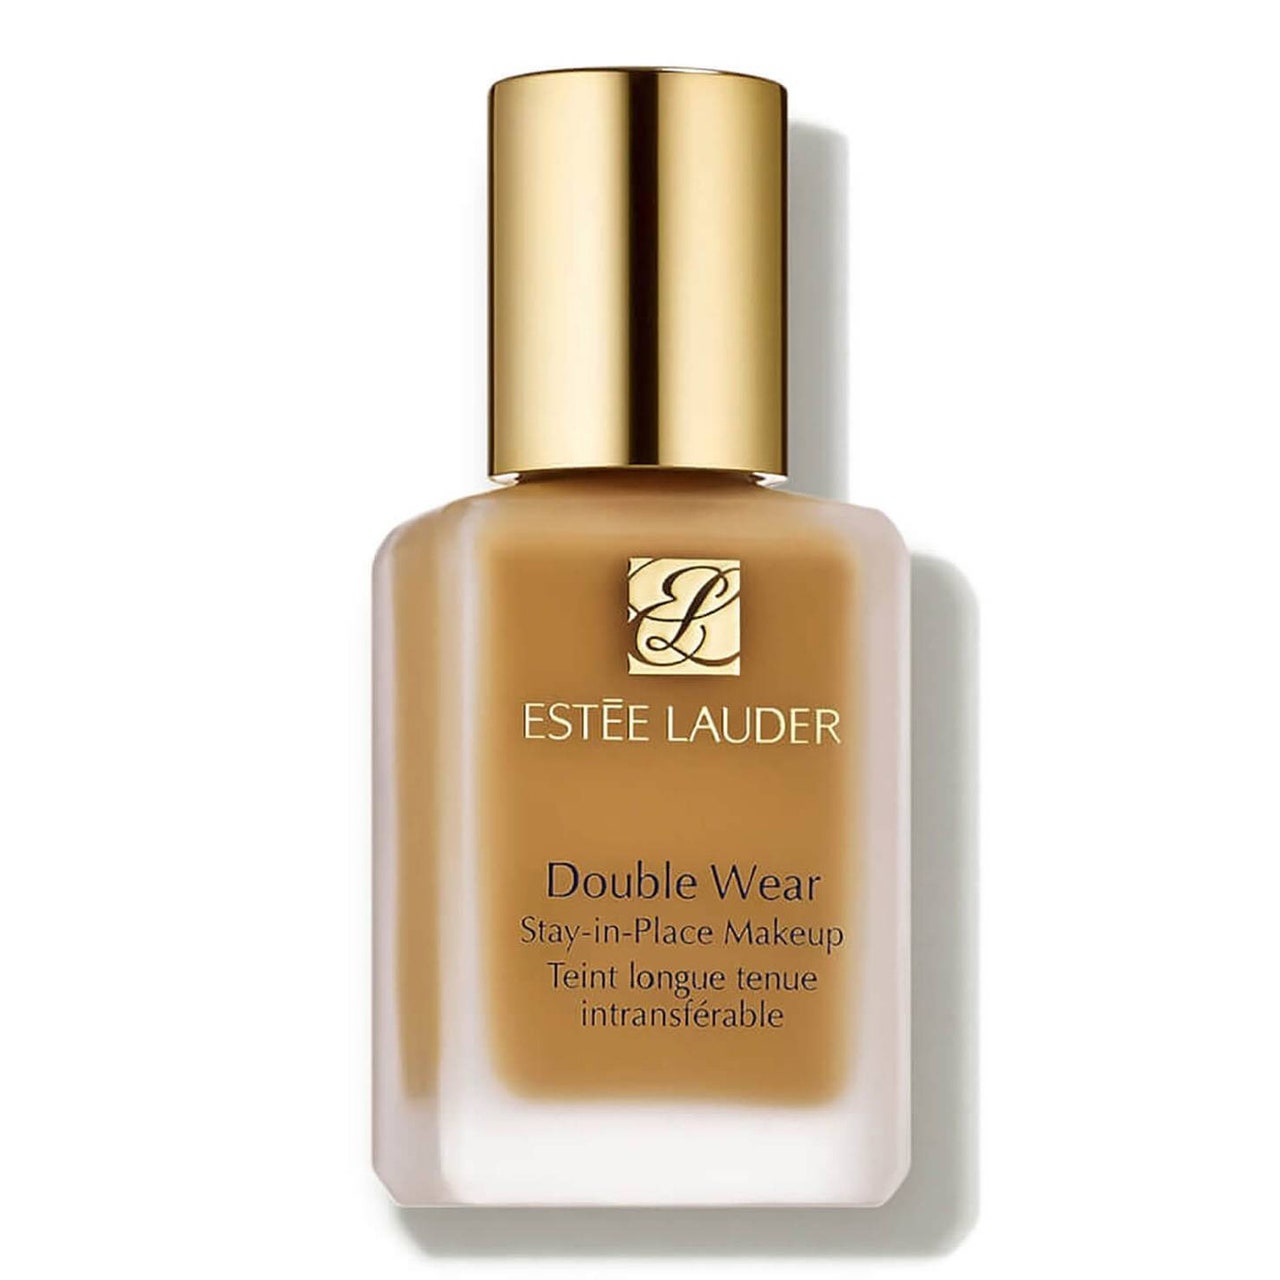 Estée Lauder Double Wear Stay-in-Place Makeup, rechteckige Flasche Foundation mit goldenem Verschluss auf weißem Hintergrund